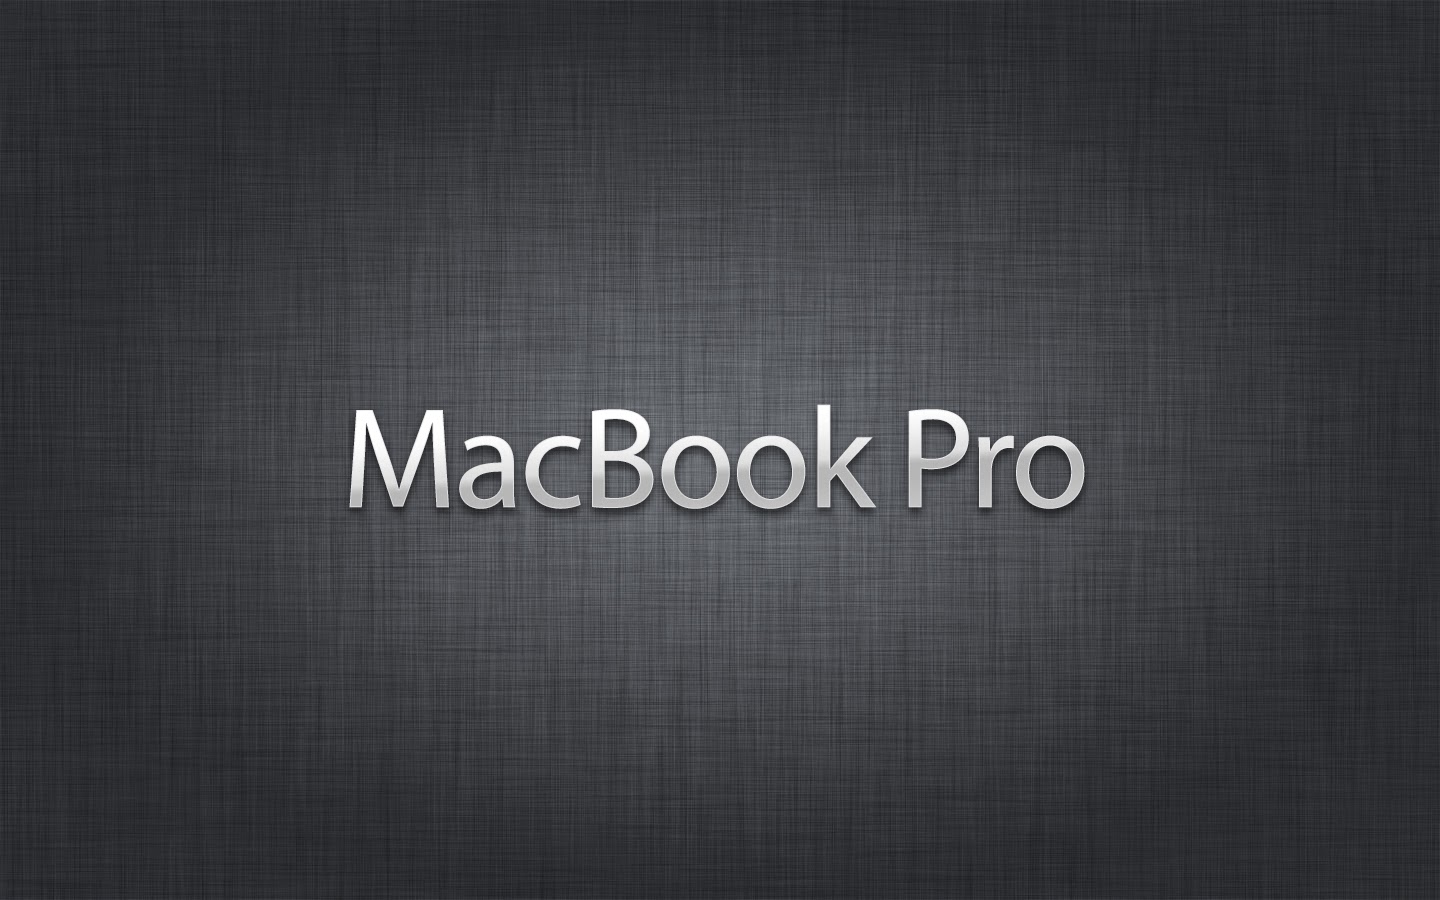 macbook pro wallpaper,testo,font,nero,grafica,modello